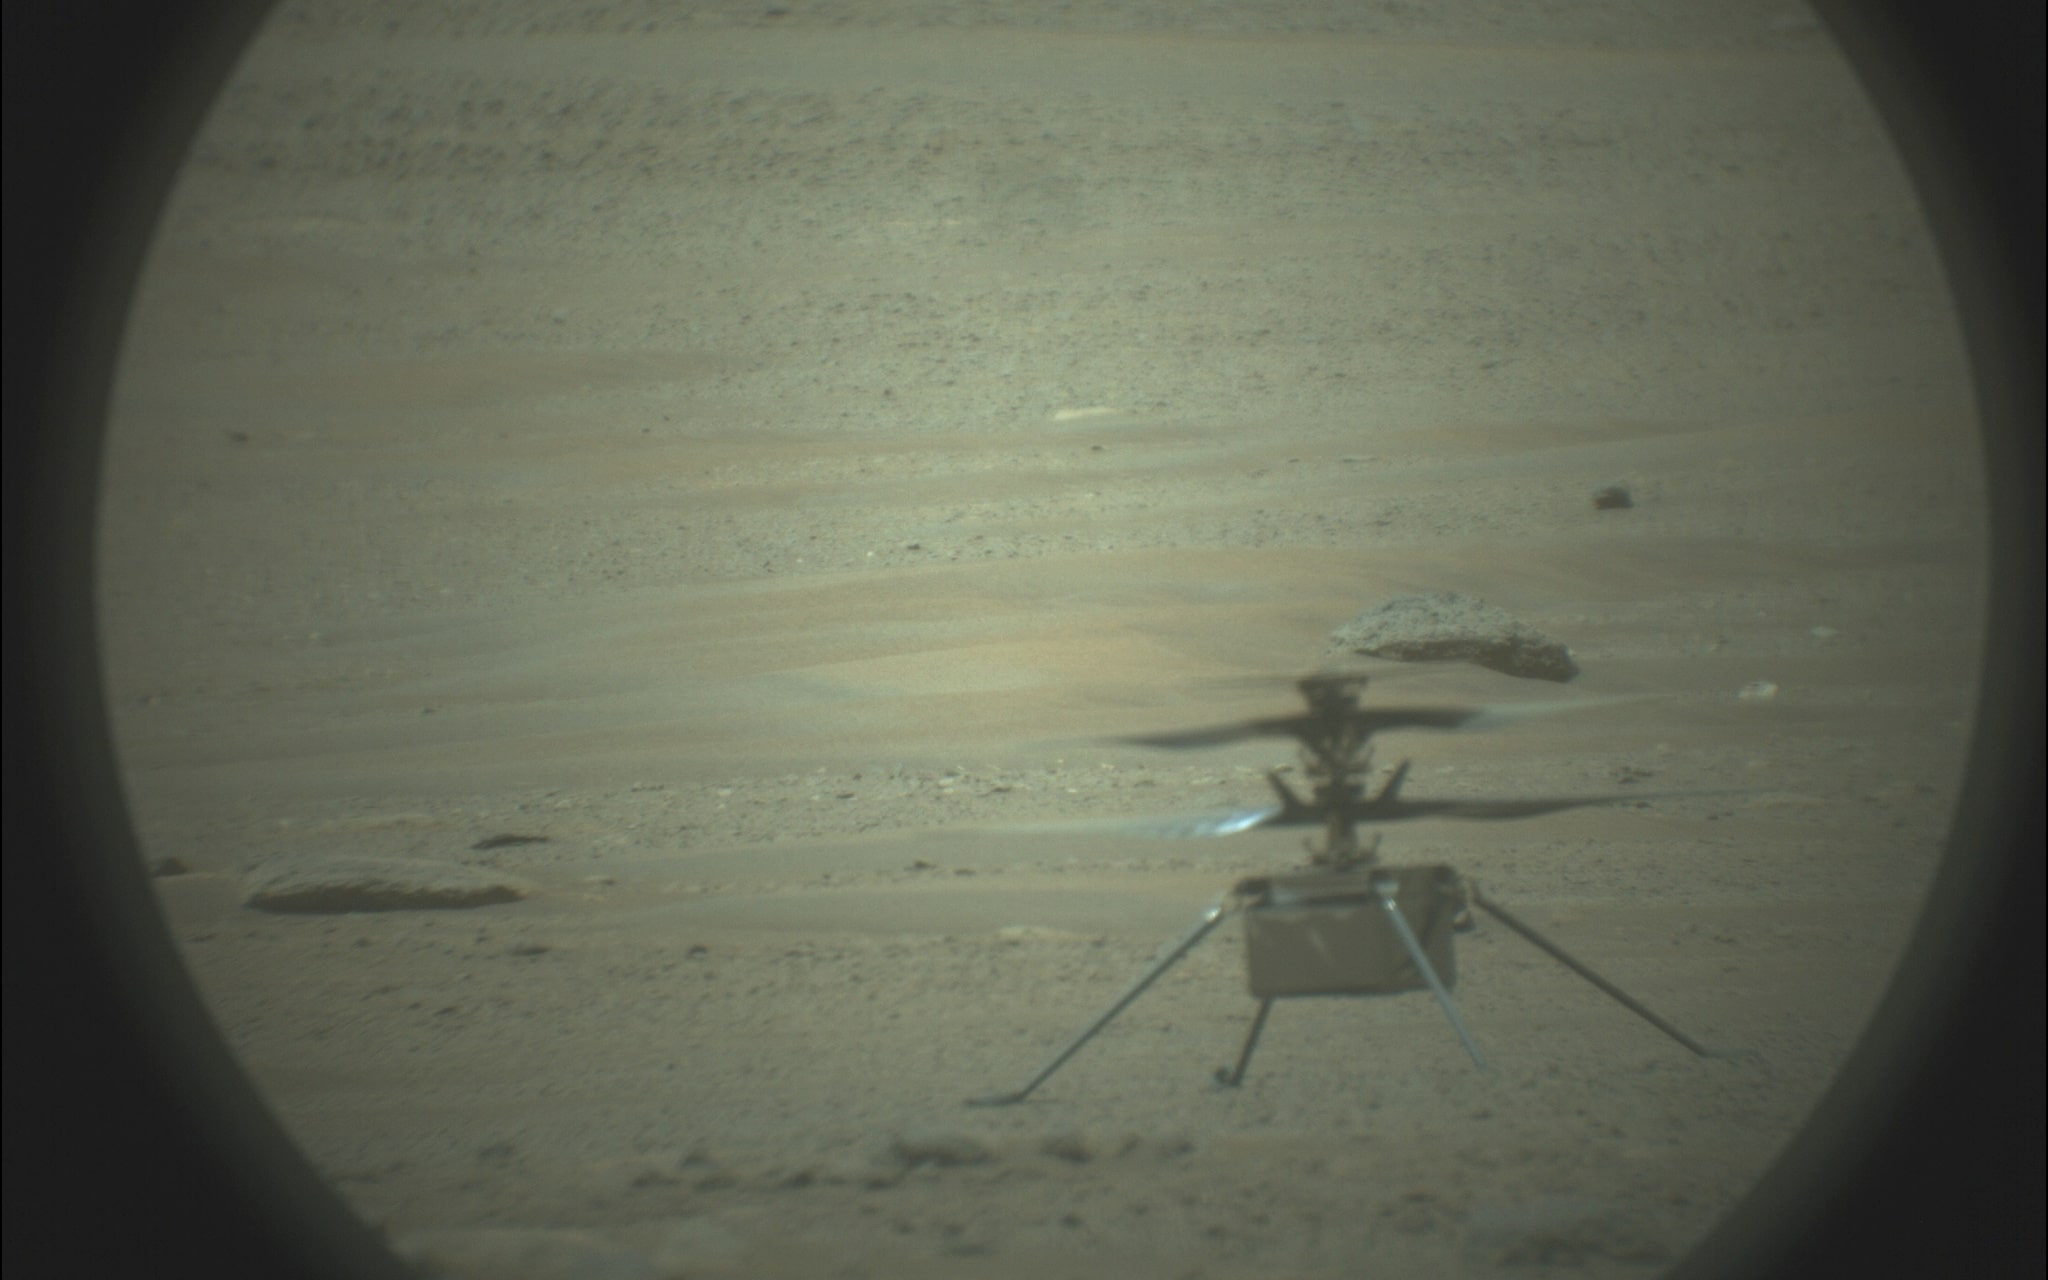 NASA показало полет инопланетного вертолета Ingenuity глазами марсохода в 3D